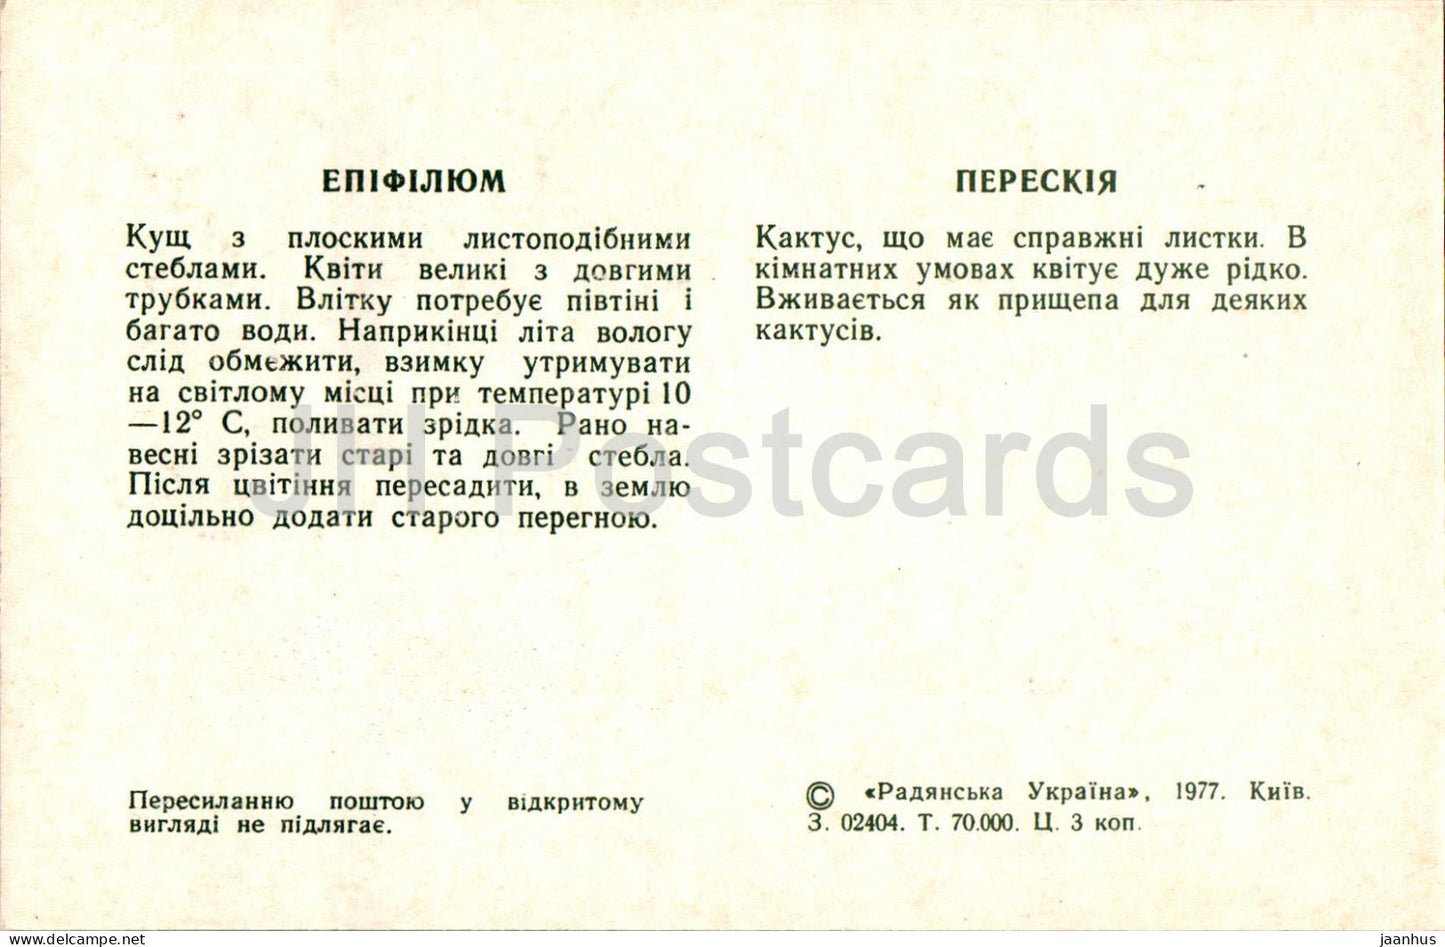 Pereskia - Epiphyllum - cacti - cactus - flowers - 1977 - Ukraine USSR - unused